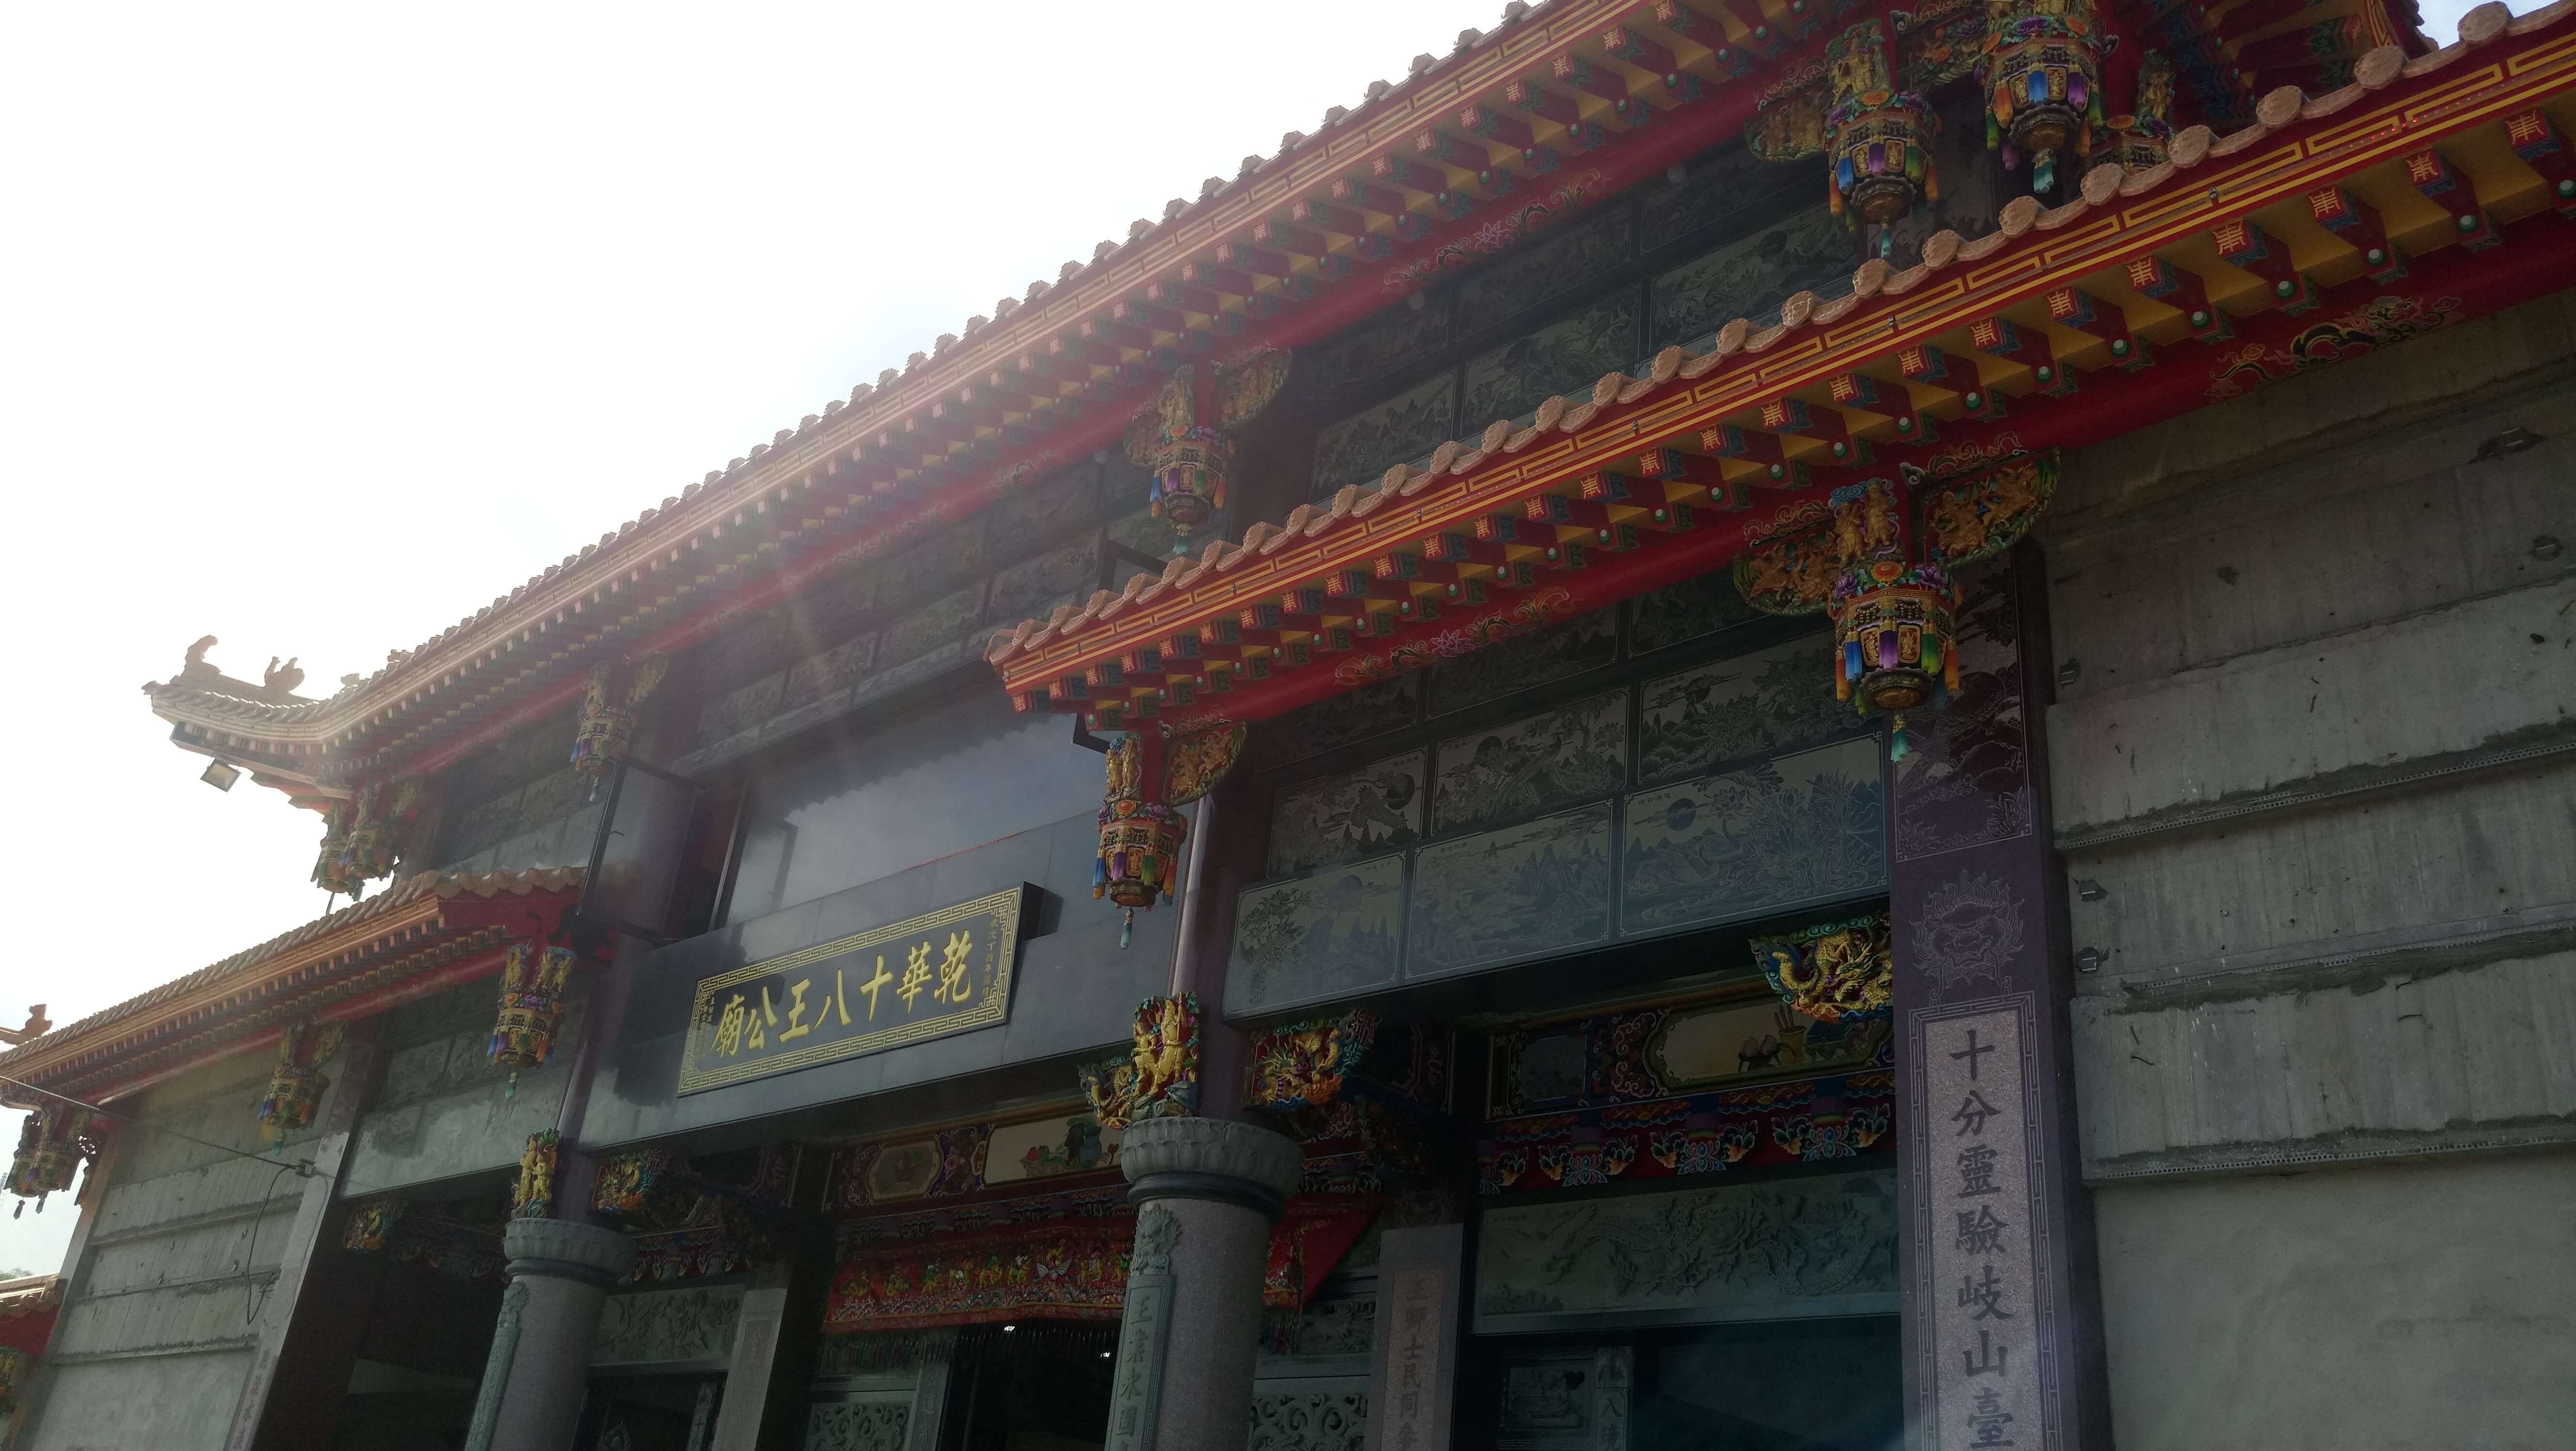 Temple of Eighteen Deities (Shi Ba Wang Gong)